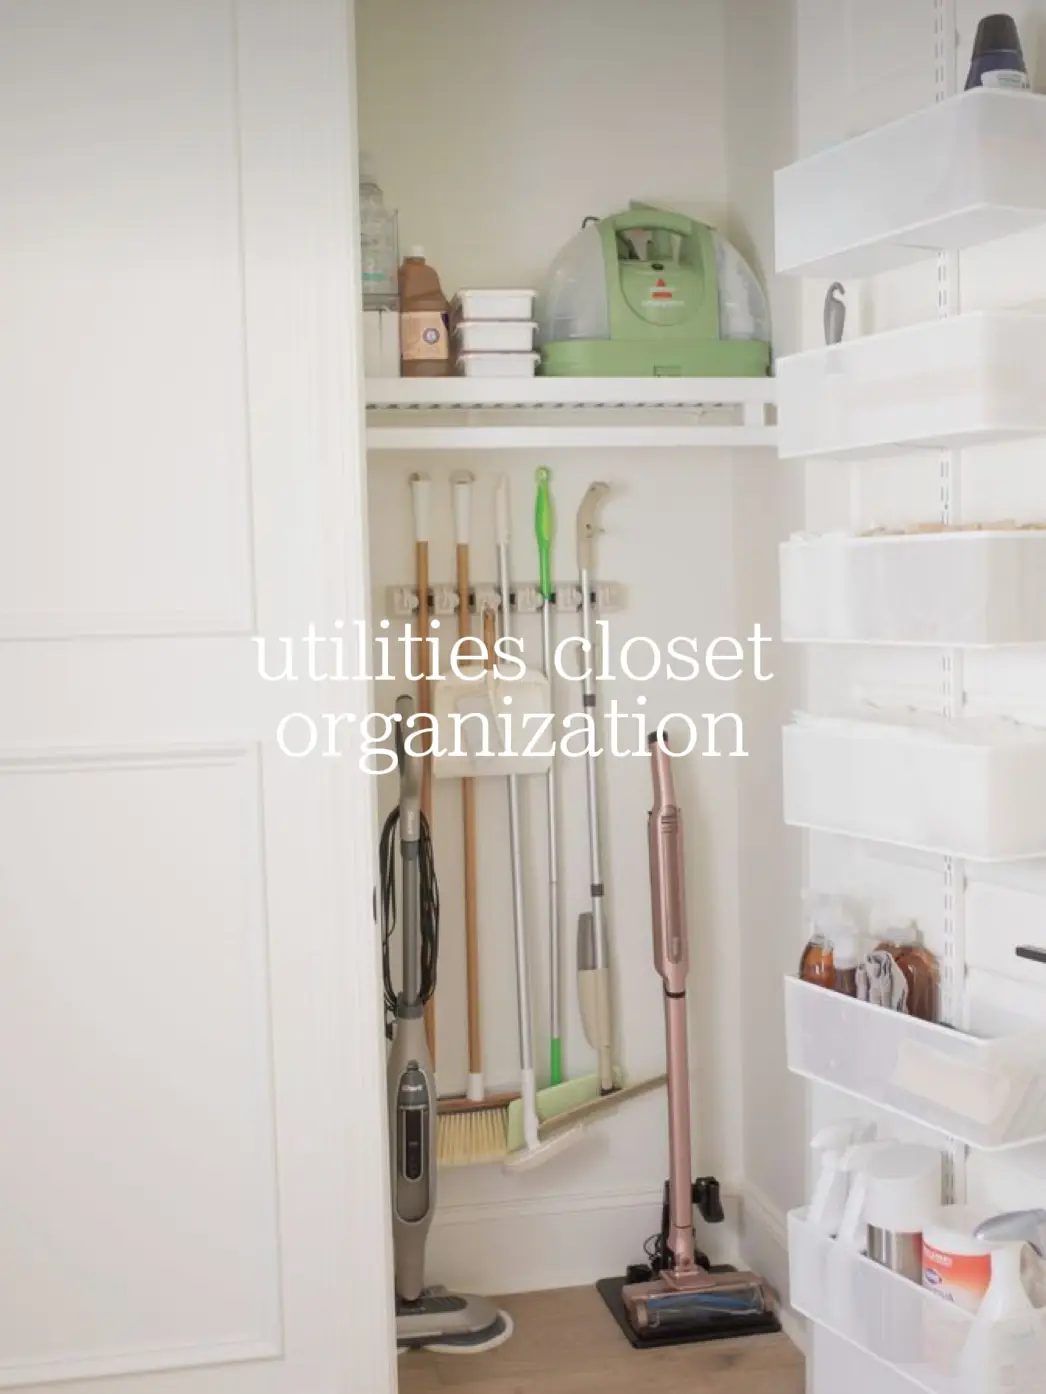 How to Organize a Utility Closet